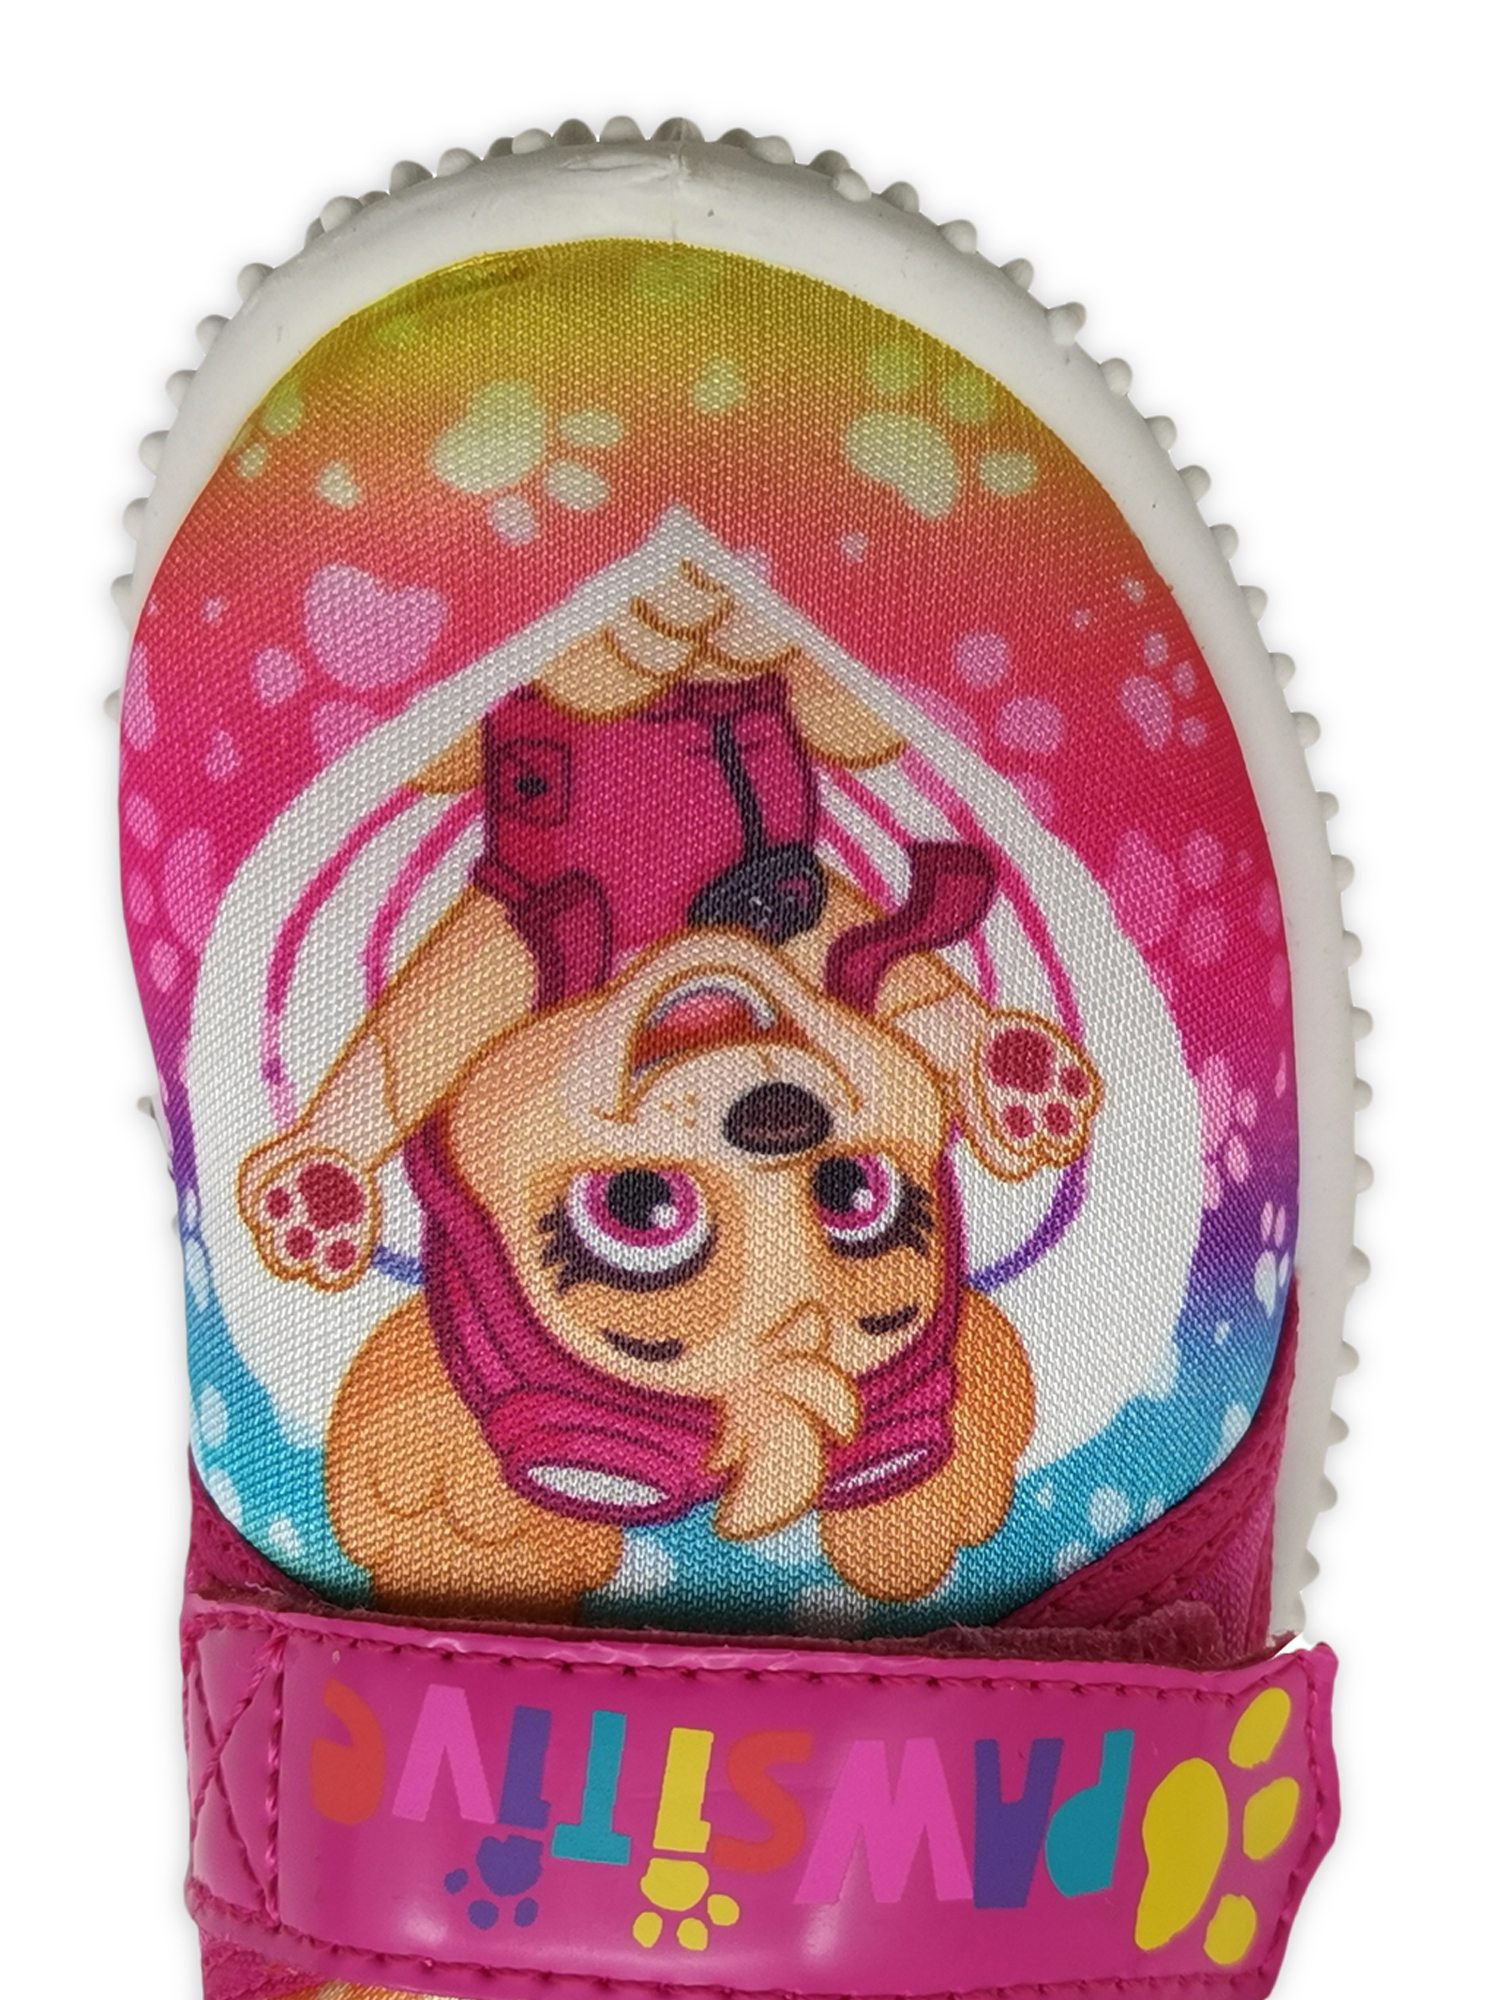 Nickelodeon Paw Patrol Summer Fun Beach Water Shoe (Toddler Girls) - image 4 of 6